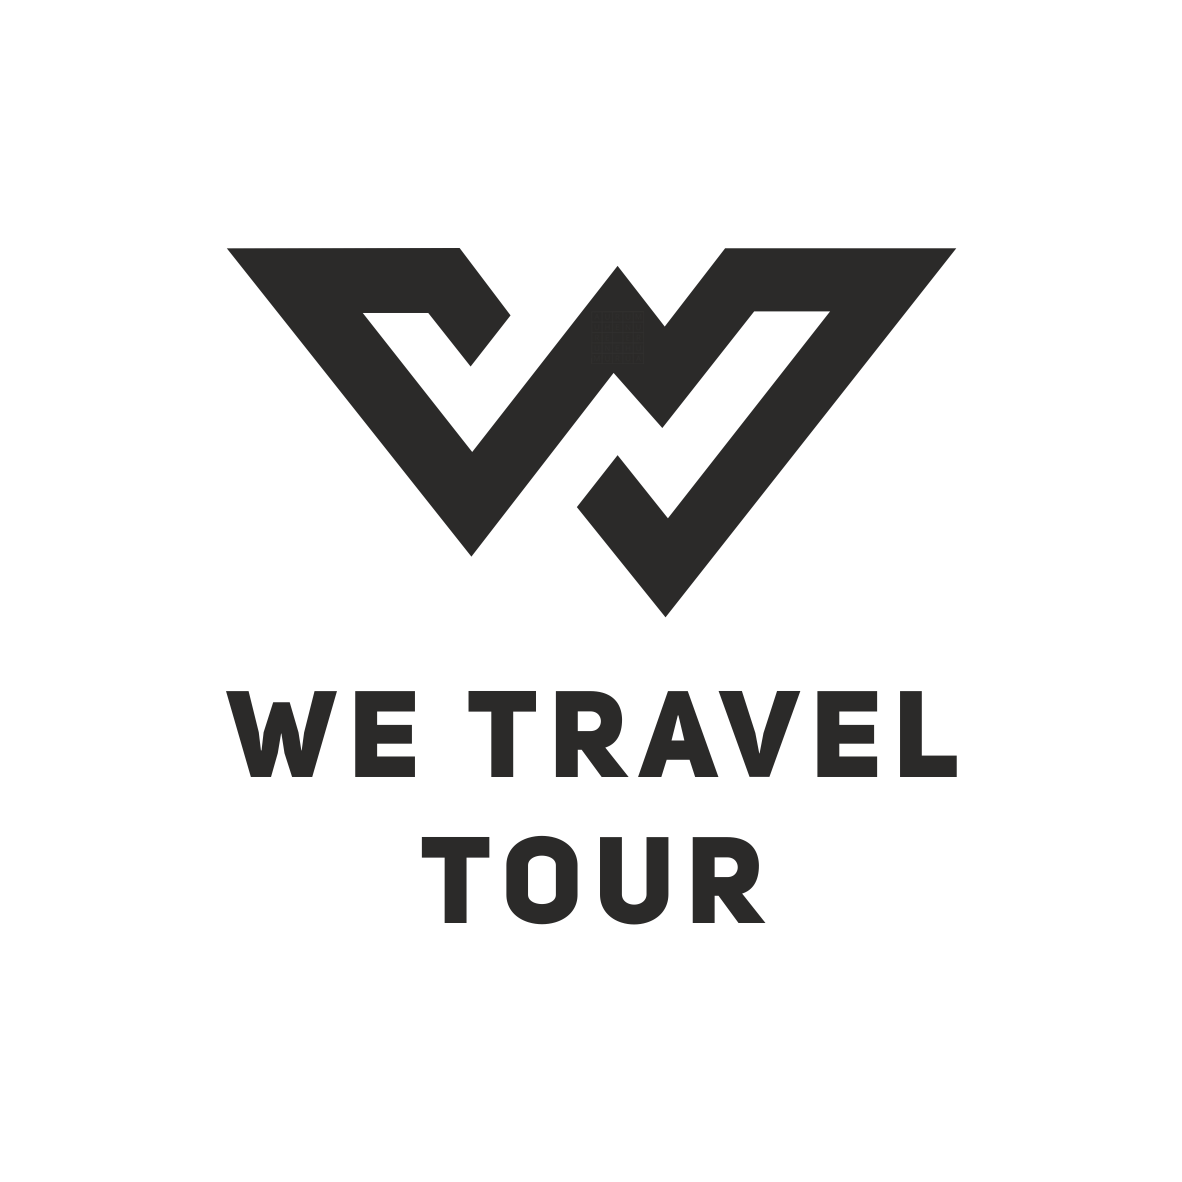 авторский тур в дагестан, "We Travel Tour" - Ваш надежный туроператор, который поможет открыть мир и найти лучшие туристические направления. Доверьтесь профессионалам и получите незабываемые впечатления!